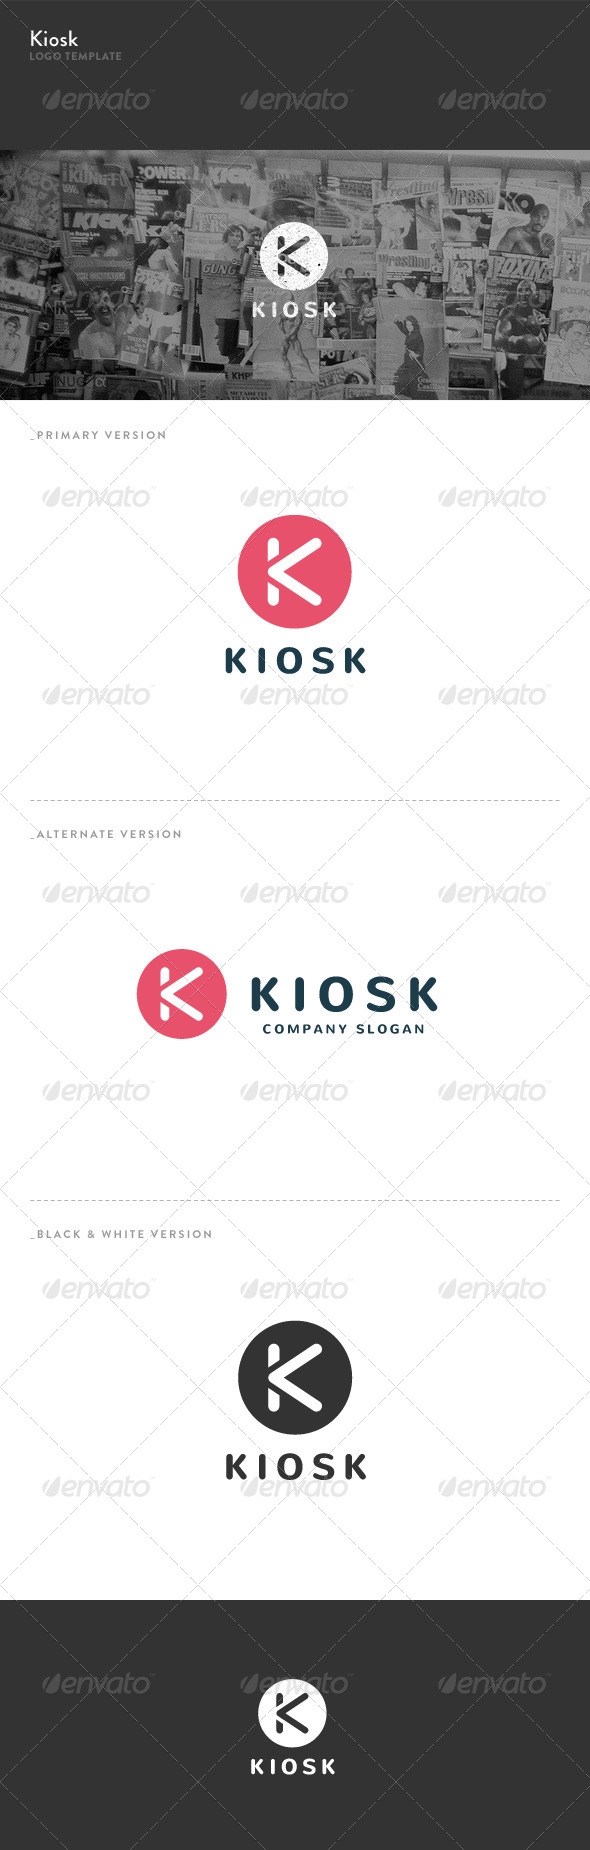 Kiosk - K Letter Logo